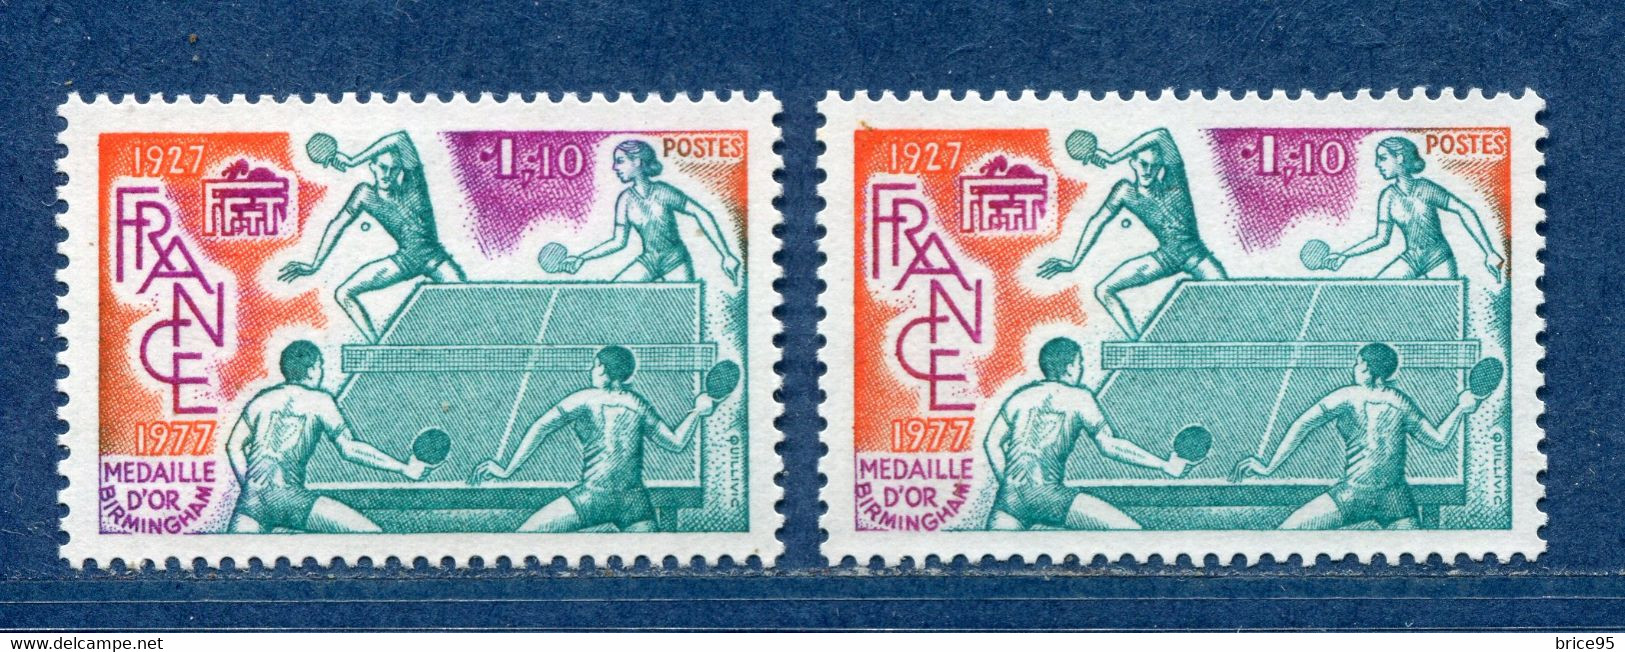 ⭐ France - Variété - YT N° 1961 - Couleurs - Pétouille - Neuf Sans Charnière - 1977 ⭐ - Unused Stamps